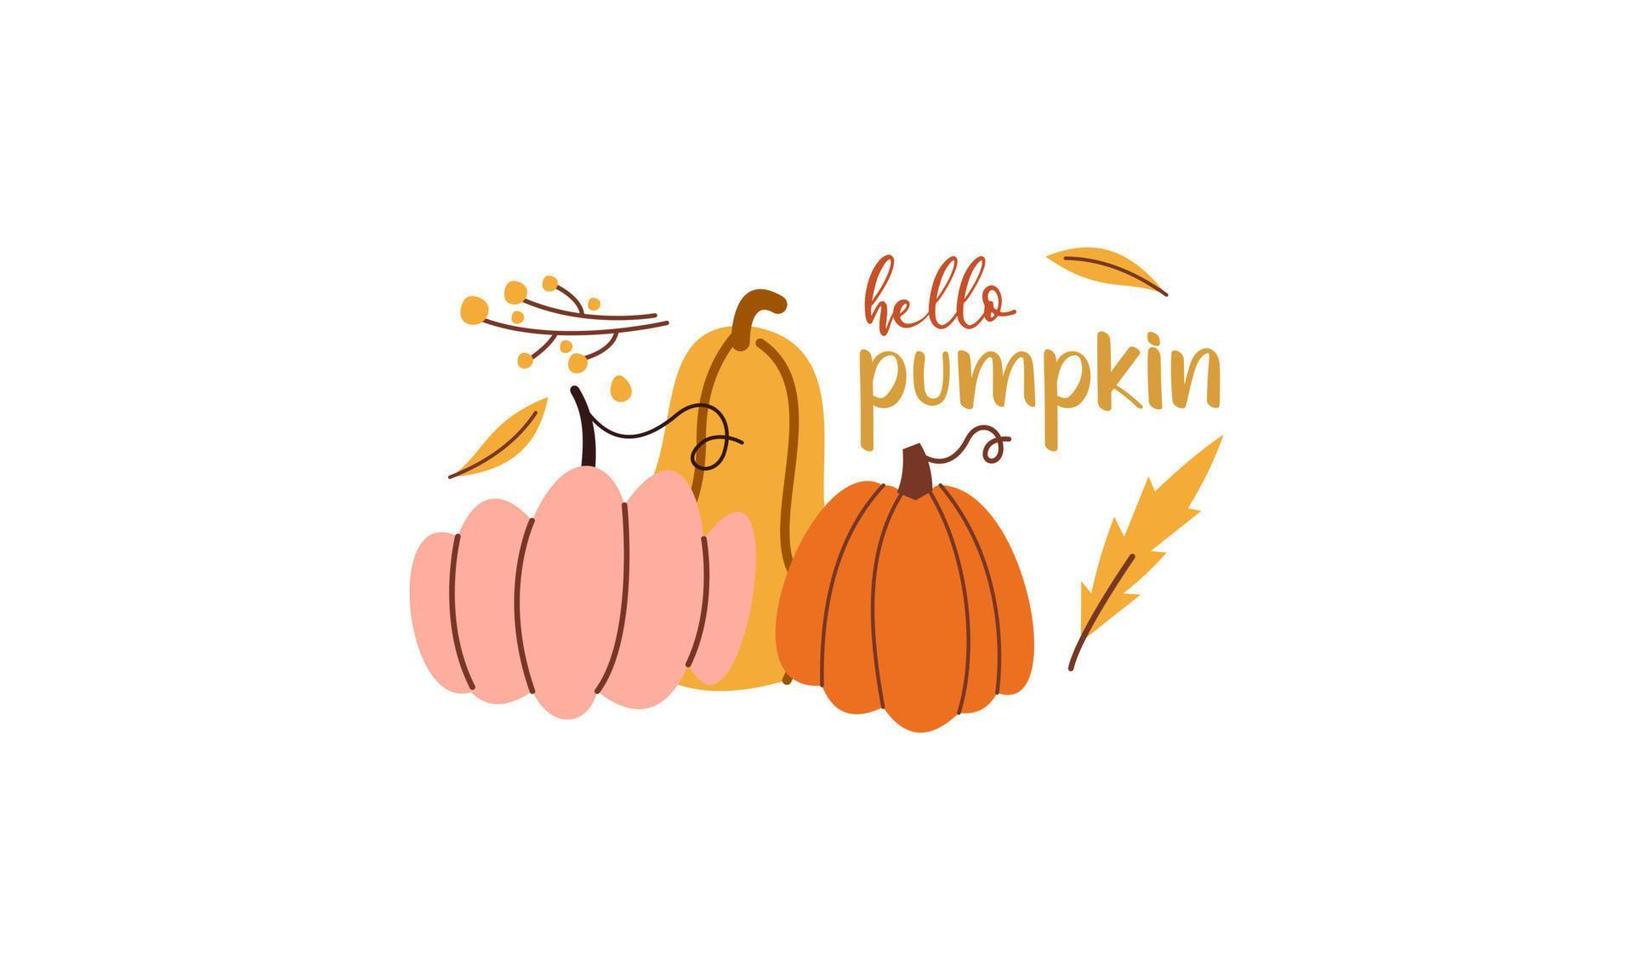 Olá temporada de abóbora. vetor de letras desenhadas à mão outono conjunto com abóboras, castanhas e folhas. hal